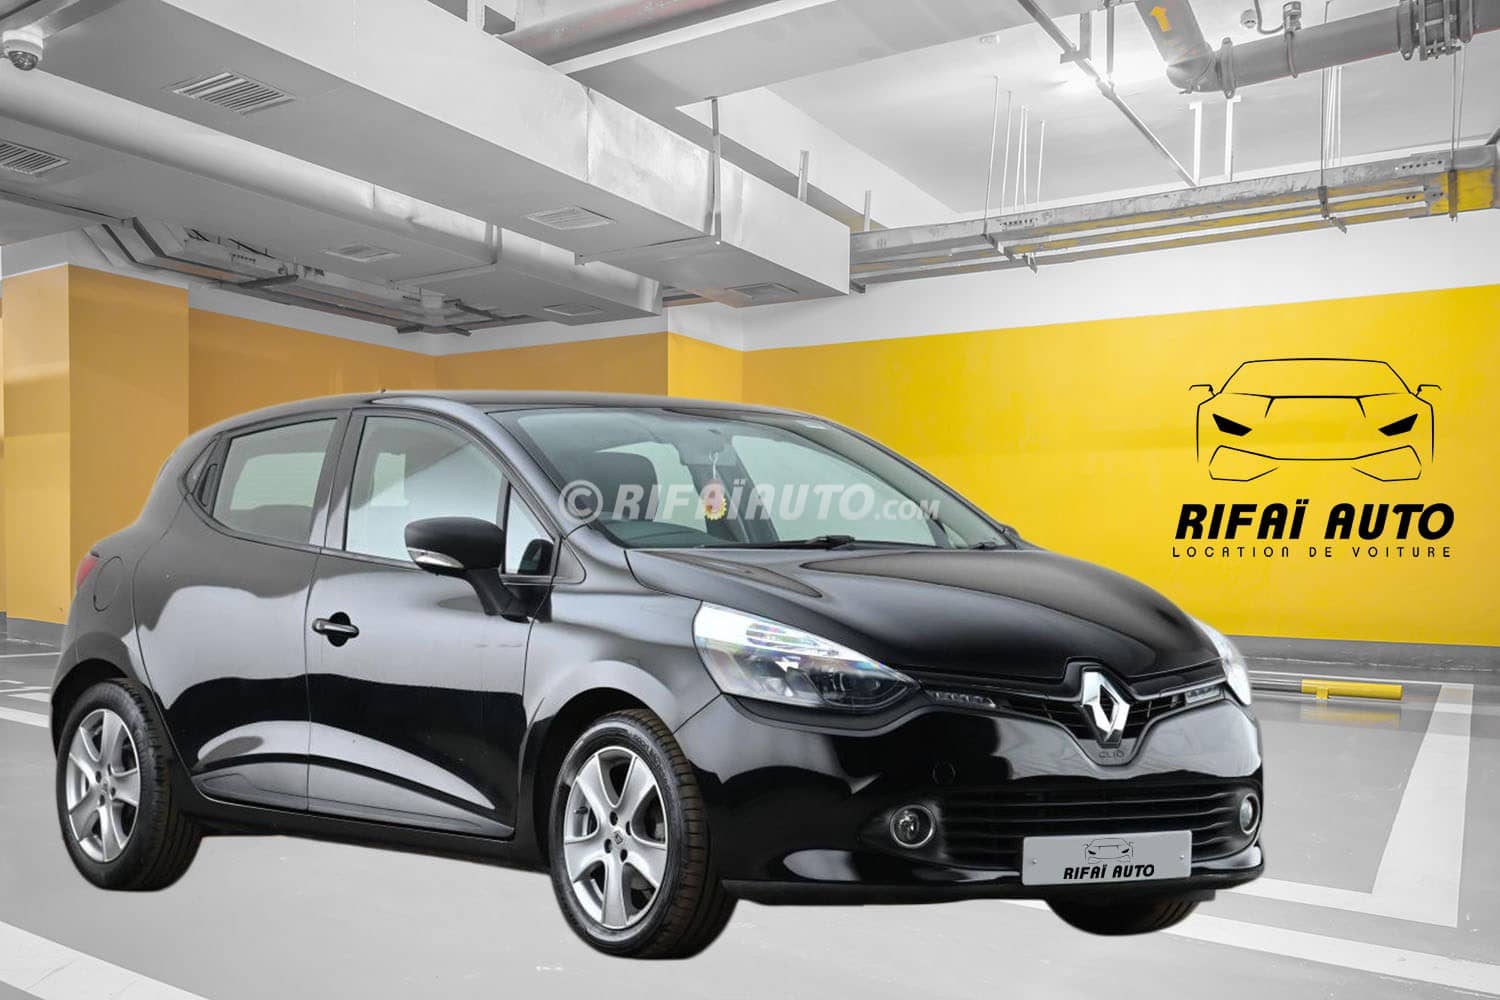 Alquilar un Renault Clio en Casablanca